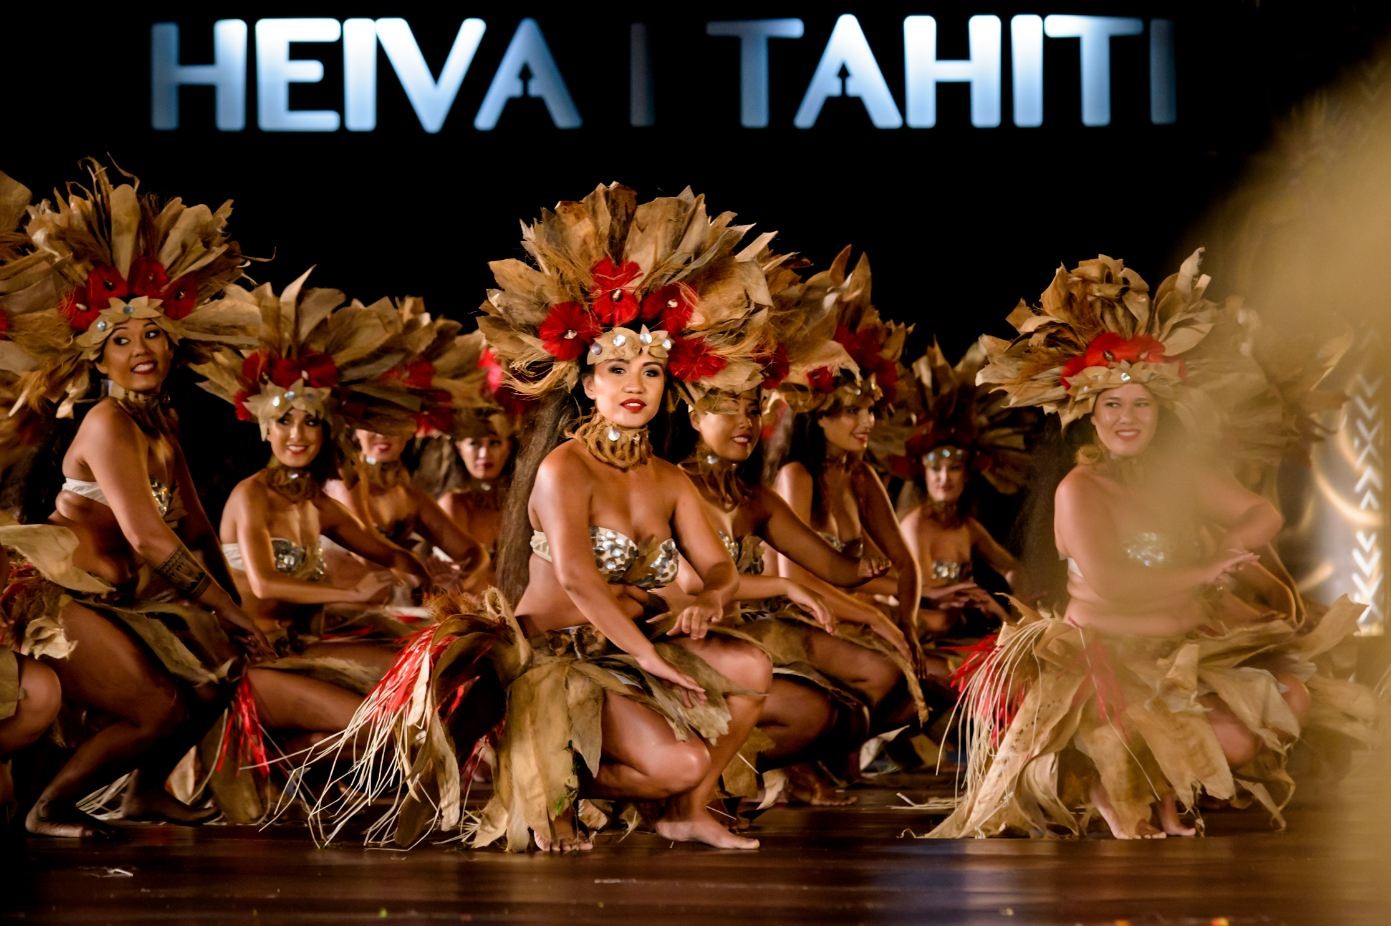 HEIVA I TAHITI: A LUGLIO IL FESTIVAL PIU’ SUGGESTIVO DE LE ISOLE DI TAHITI IN POLINESIA